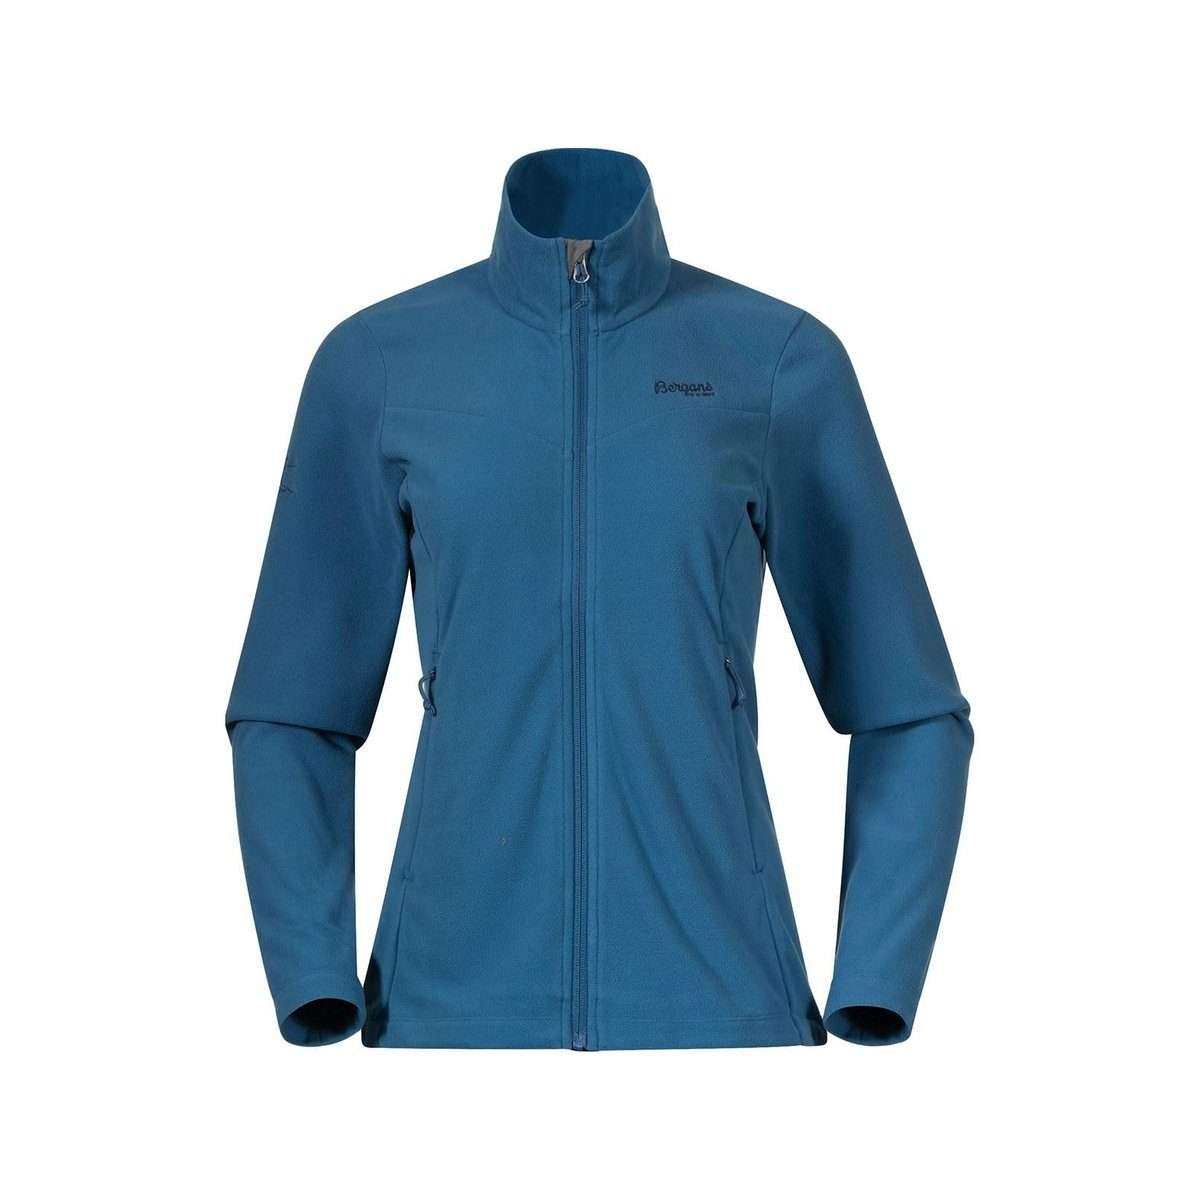 Флисовая куртка синяя приталенного текстиля (1 шт)